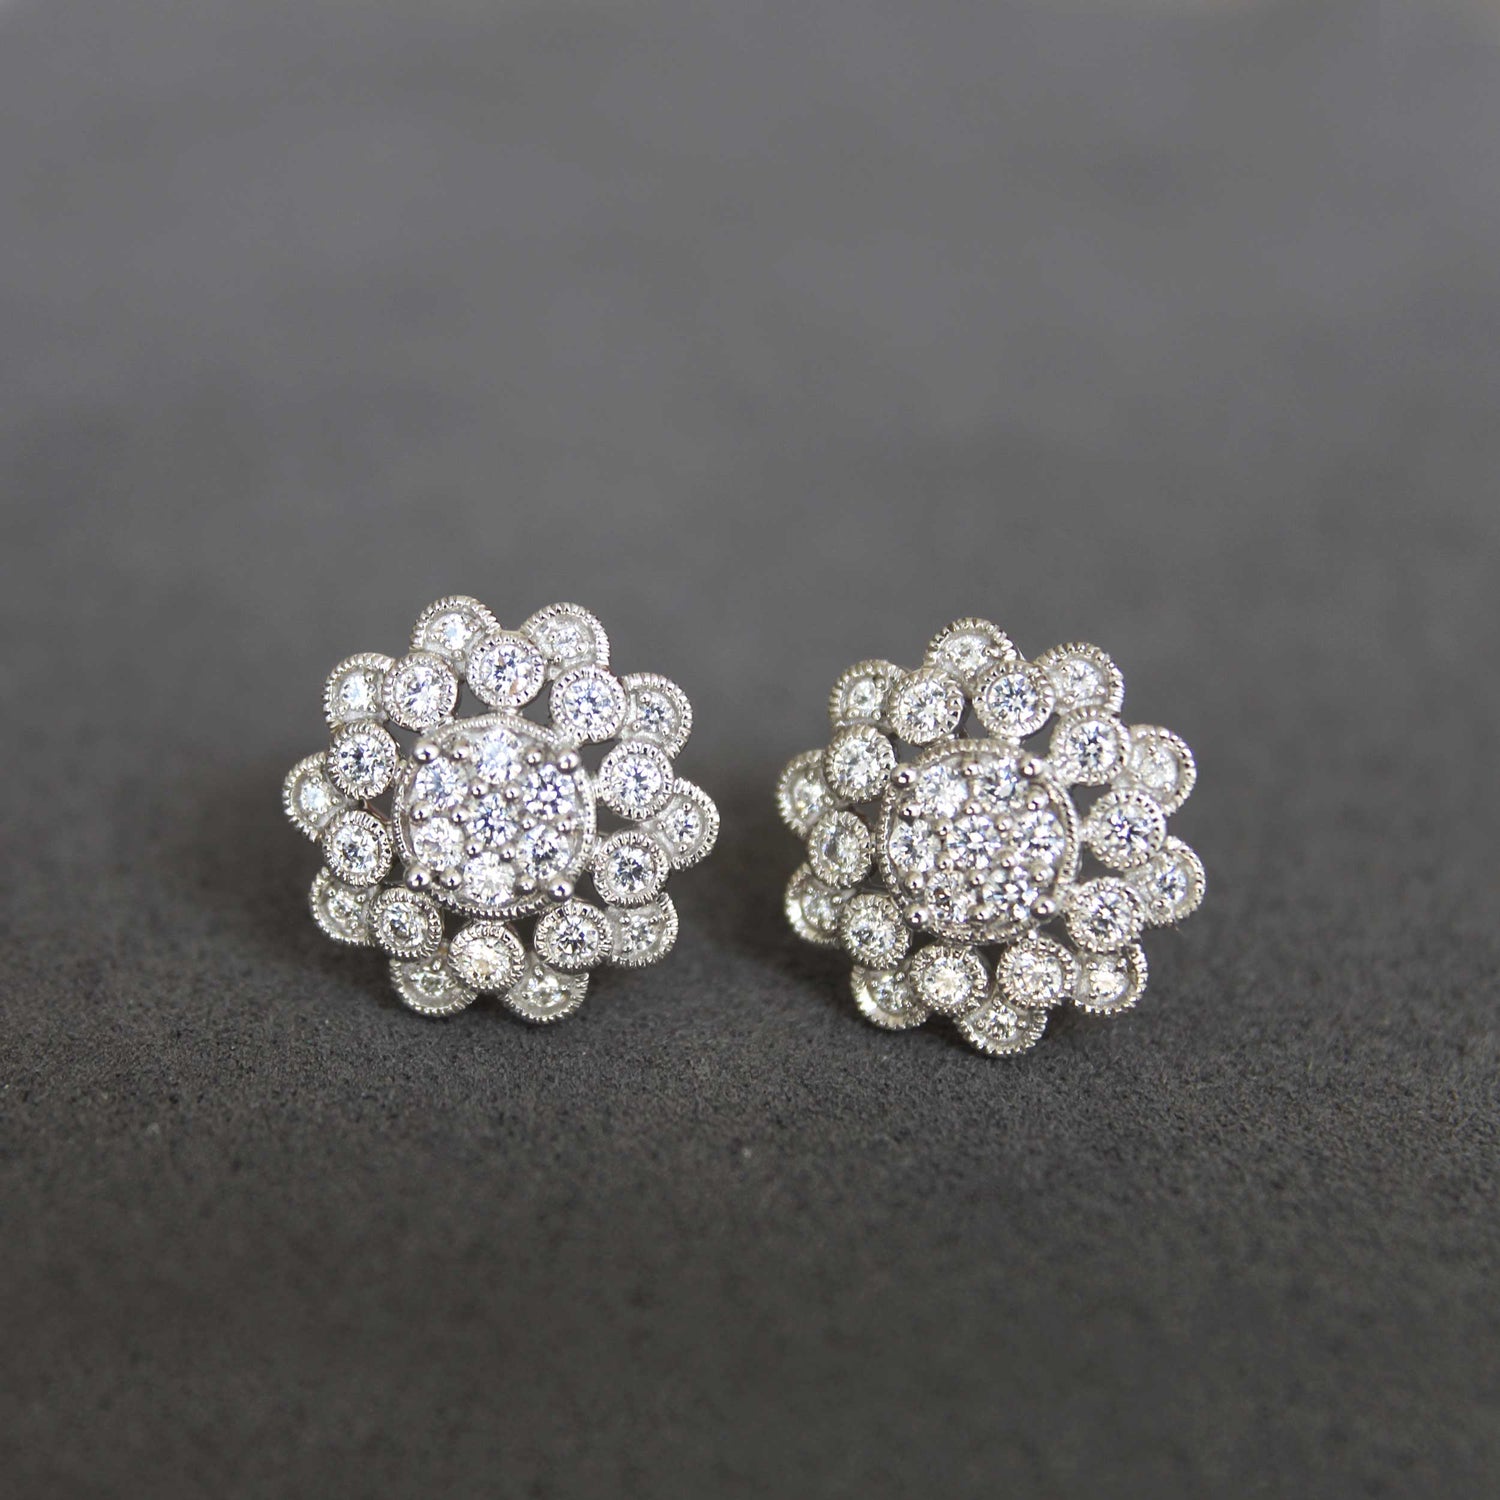 1 Ctw Diamond Vintage Flower Earrings in 925 Sterling Silver